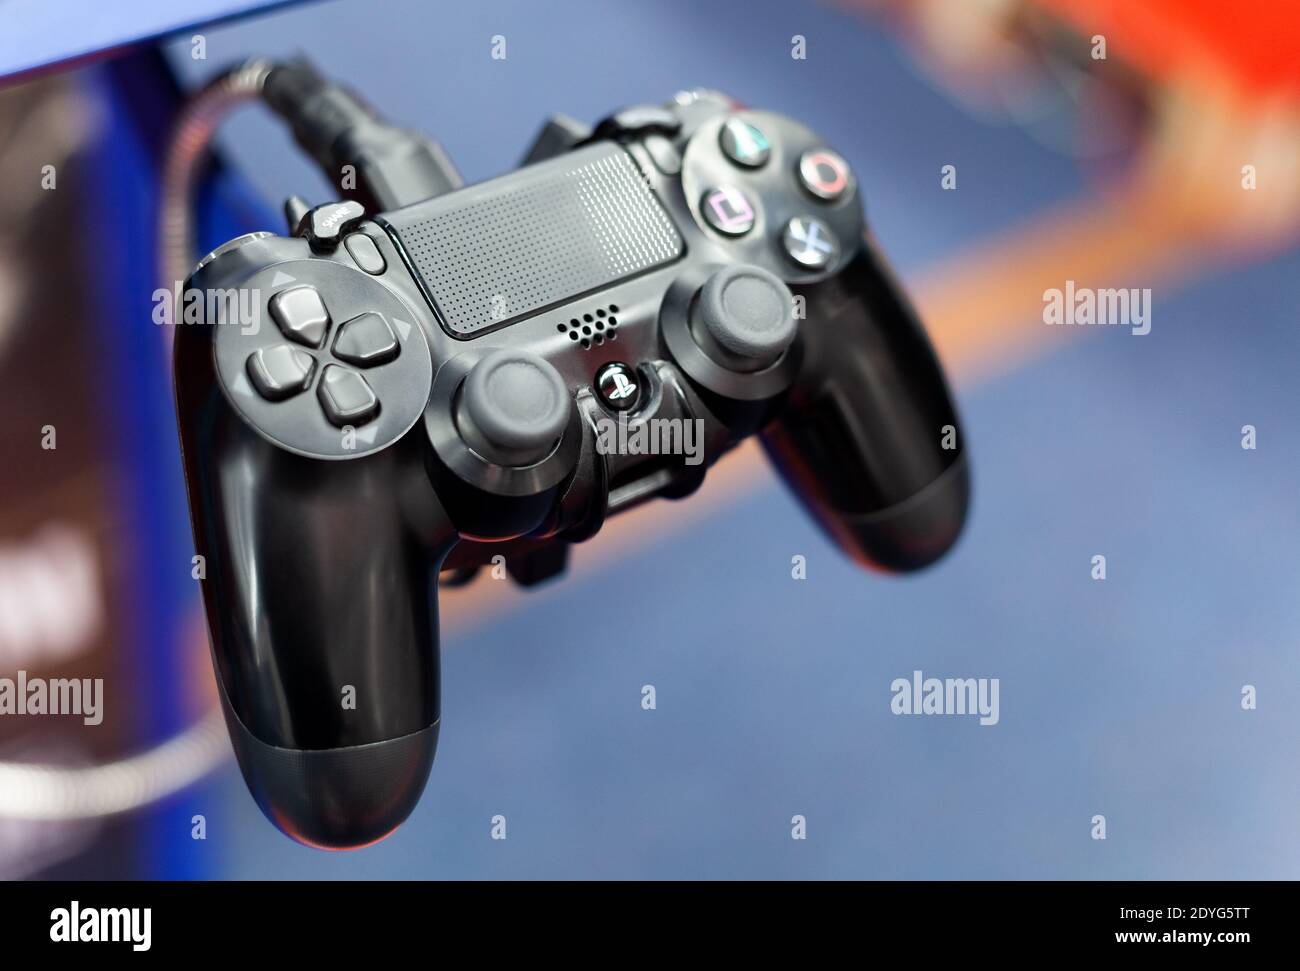 Playstation 4 controller immagini e fotografie stock ad alta risoluzione -  Alamy